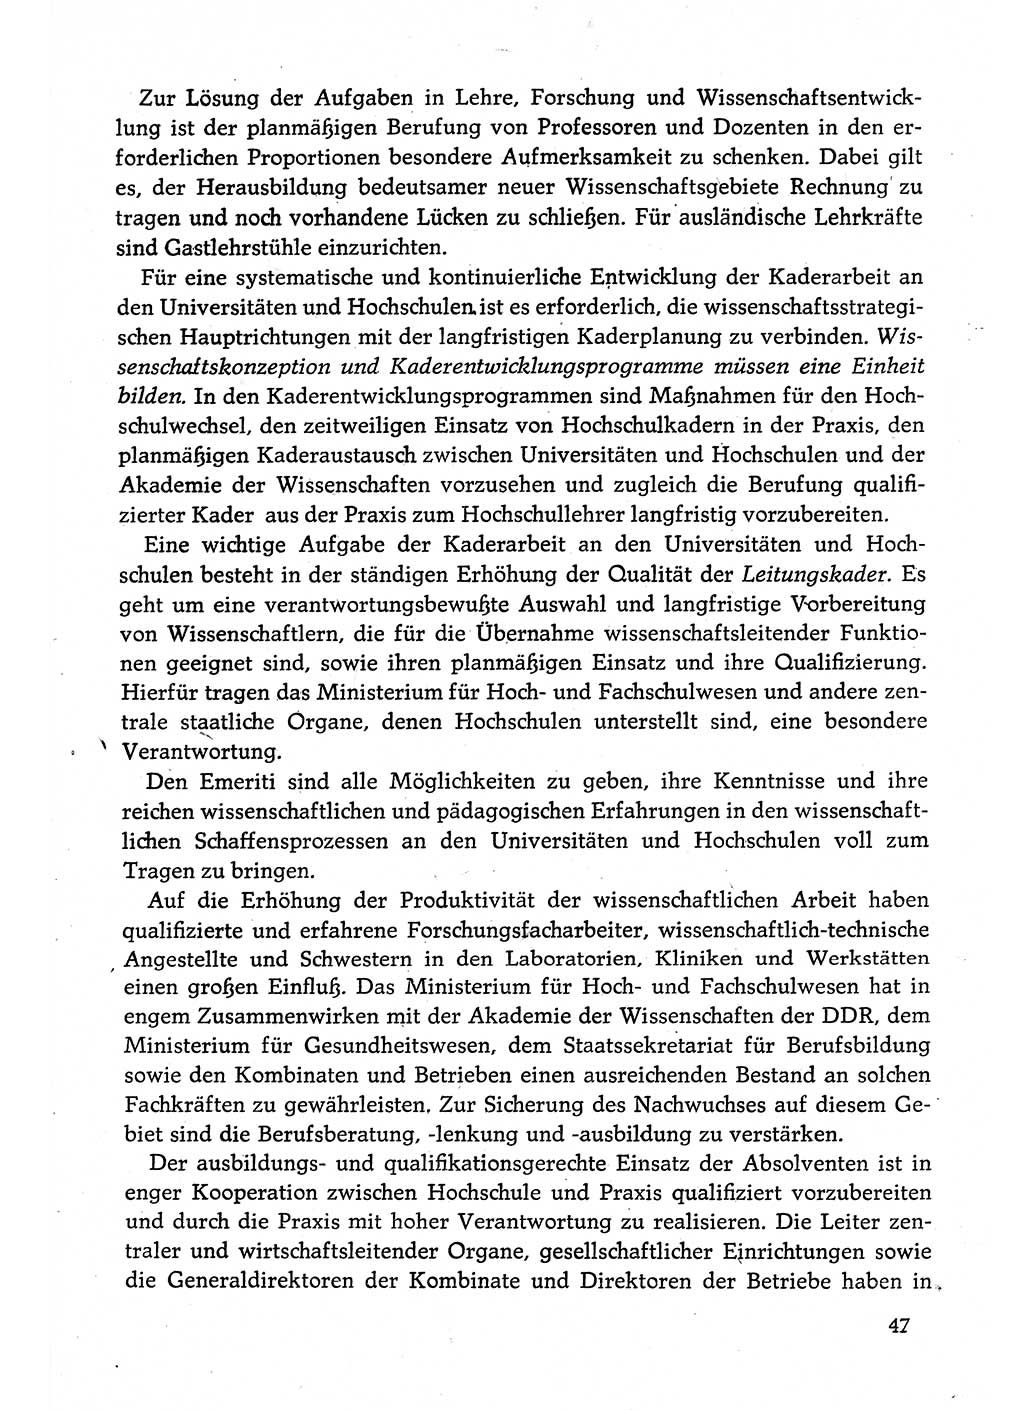 Dokumente der Sozialistischen Einheitspartei Deutschlands (SED) [Deutsche Demokratische Republik (DDR)] 1980-1981, Seite 47 (Dok. SED DDR 1980-1981, S. 47)